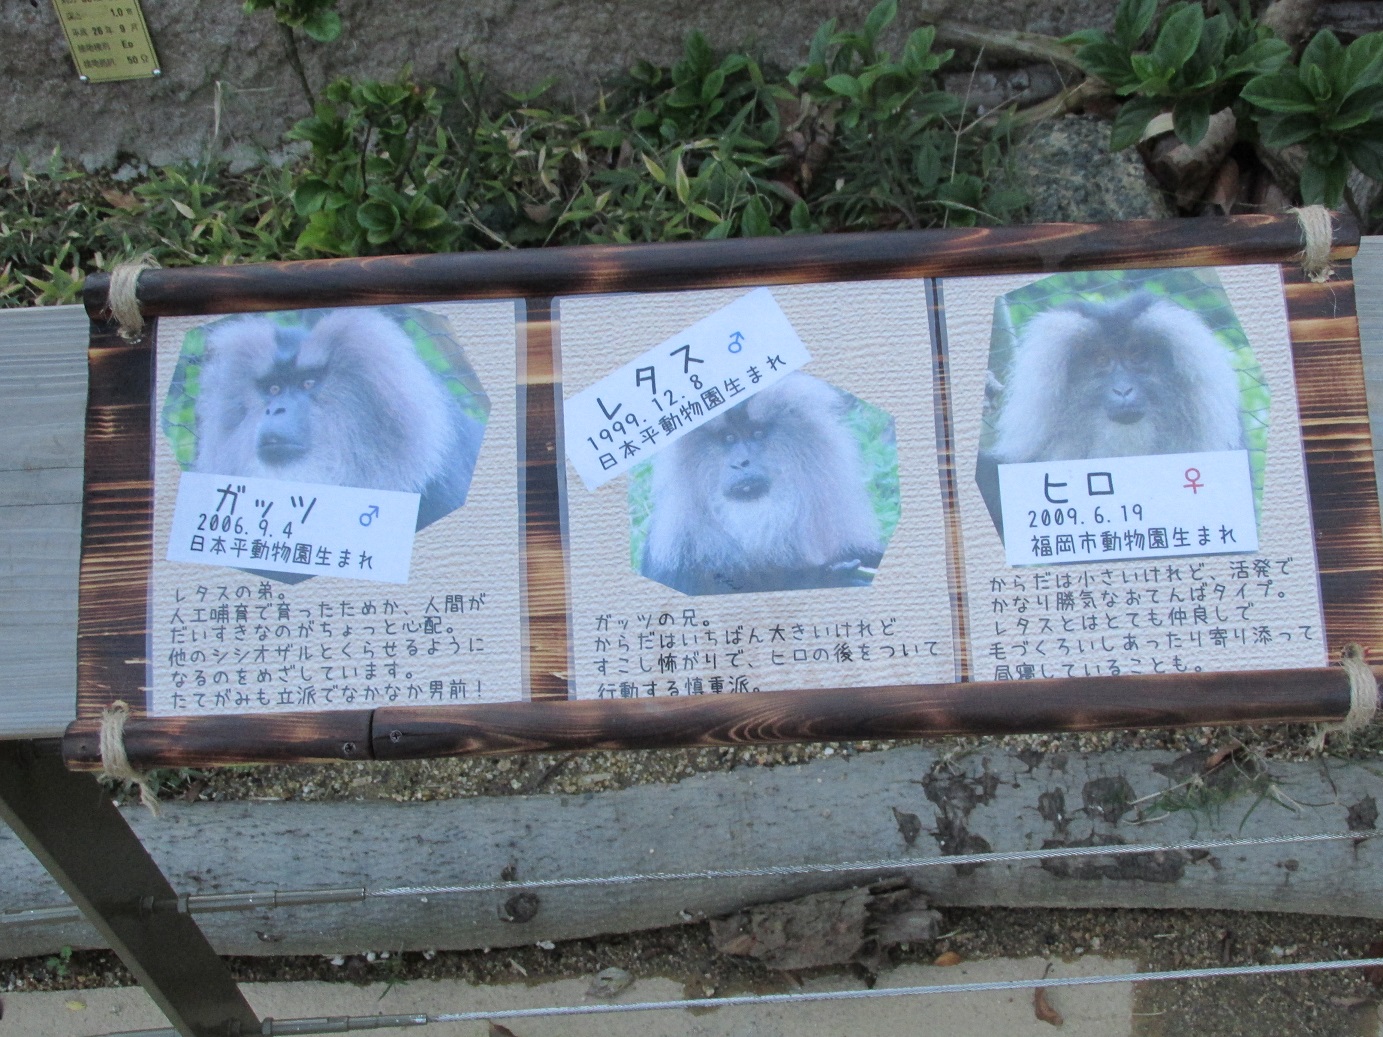 １１月２４日 かんばん 飼育員ブログ ときわ動物園 ときわ公園 山口県宇部市